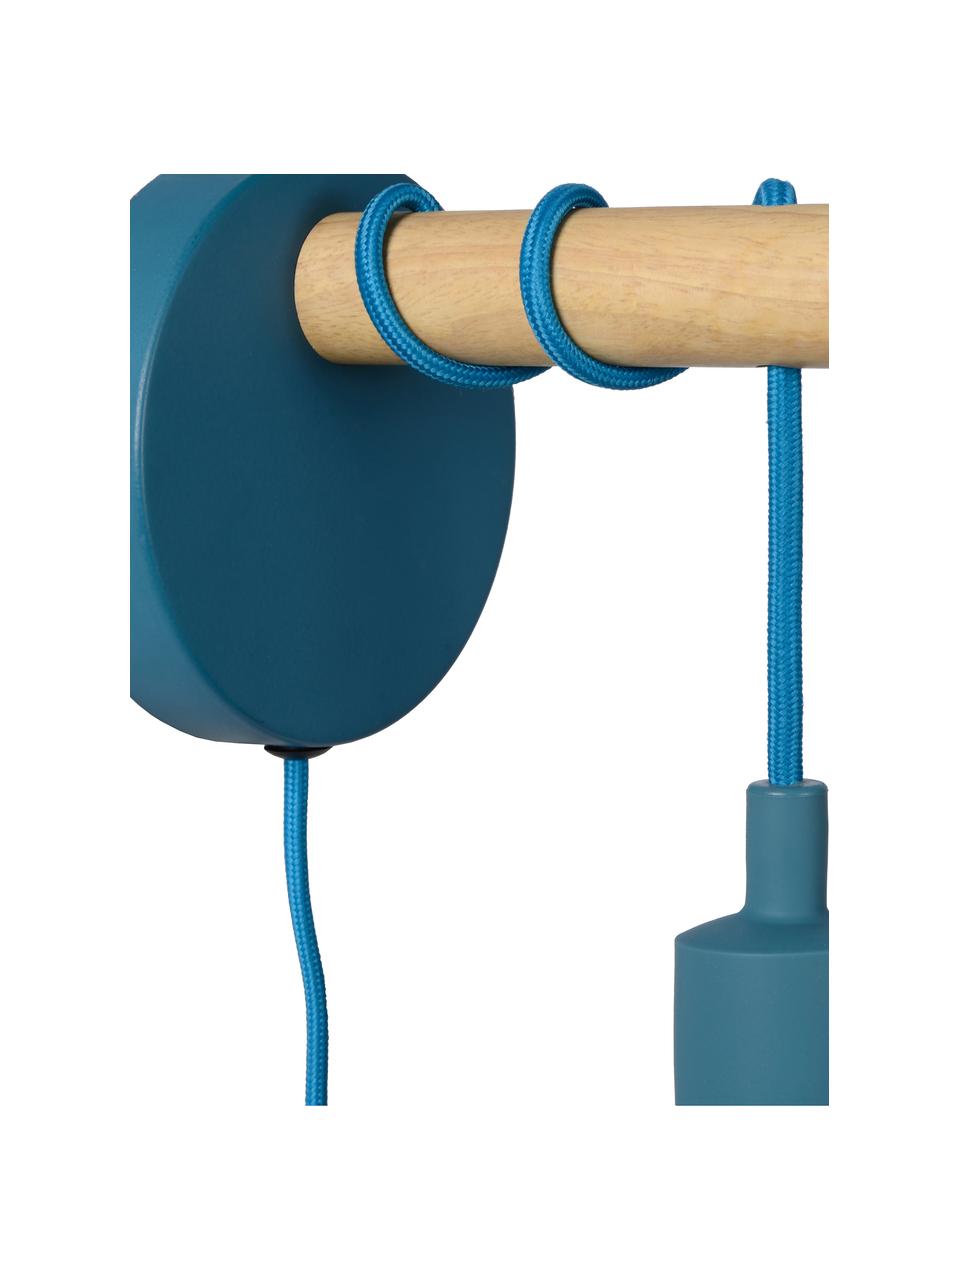 Wandleuchte Pola mit Stecker in Blau, Blau, Braun, T 16 x H 22 cm